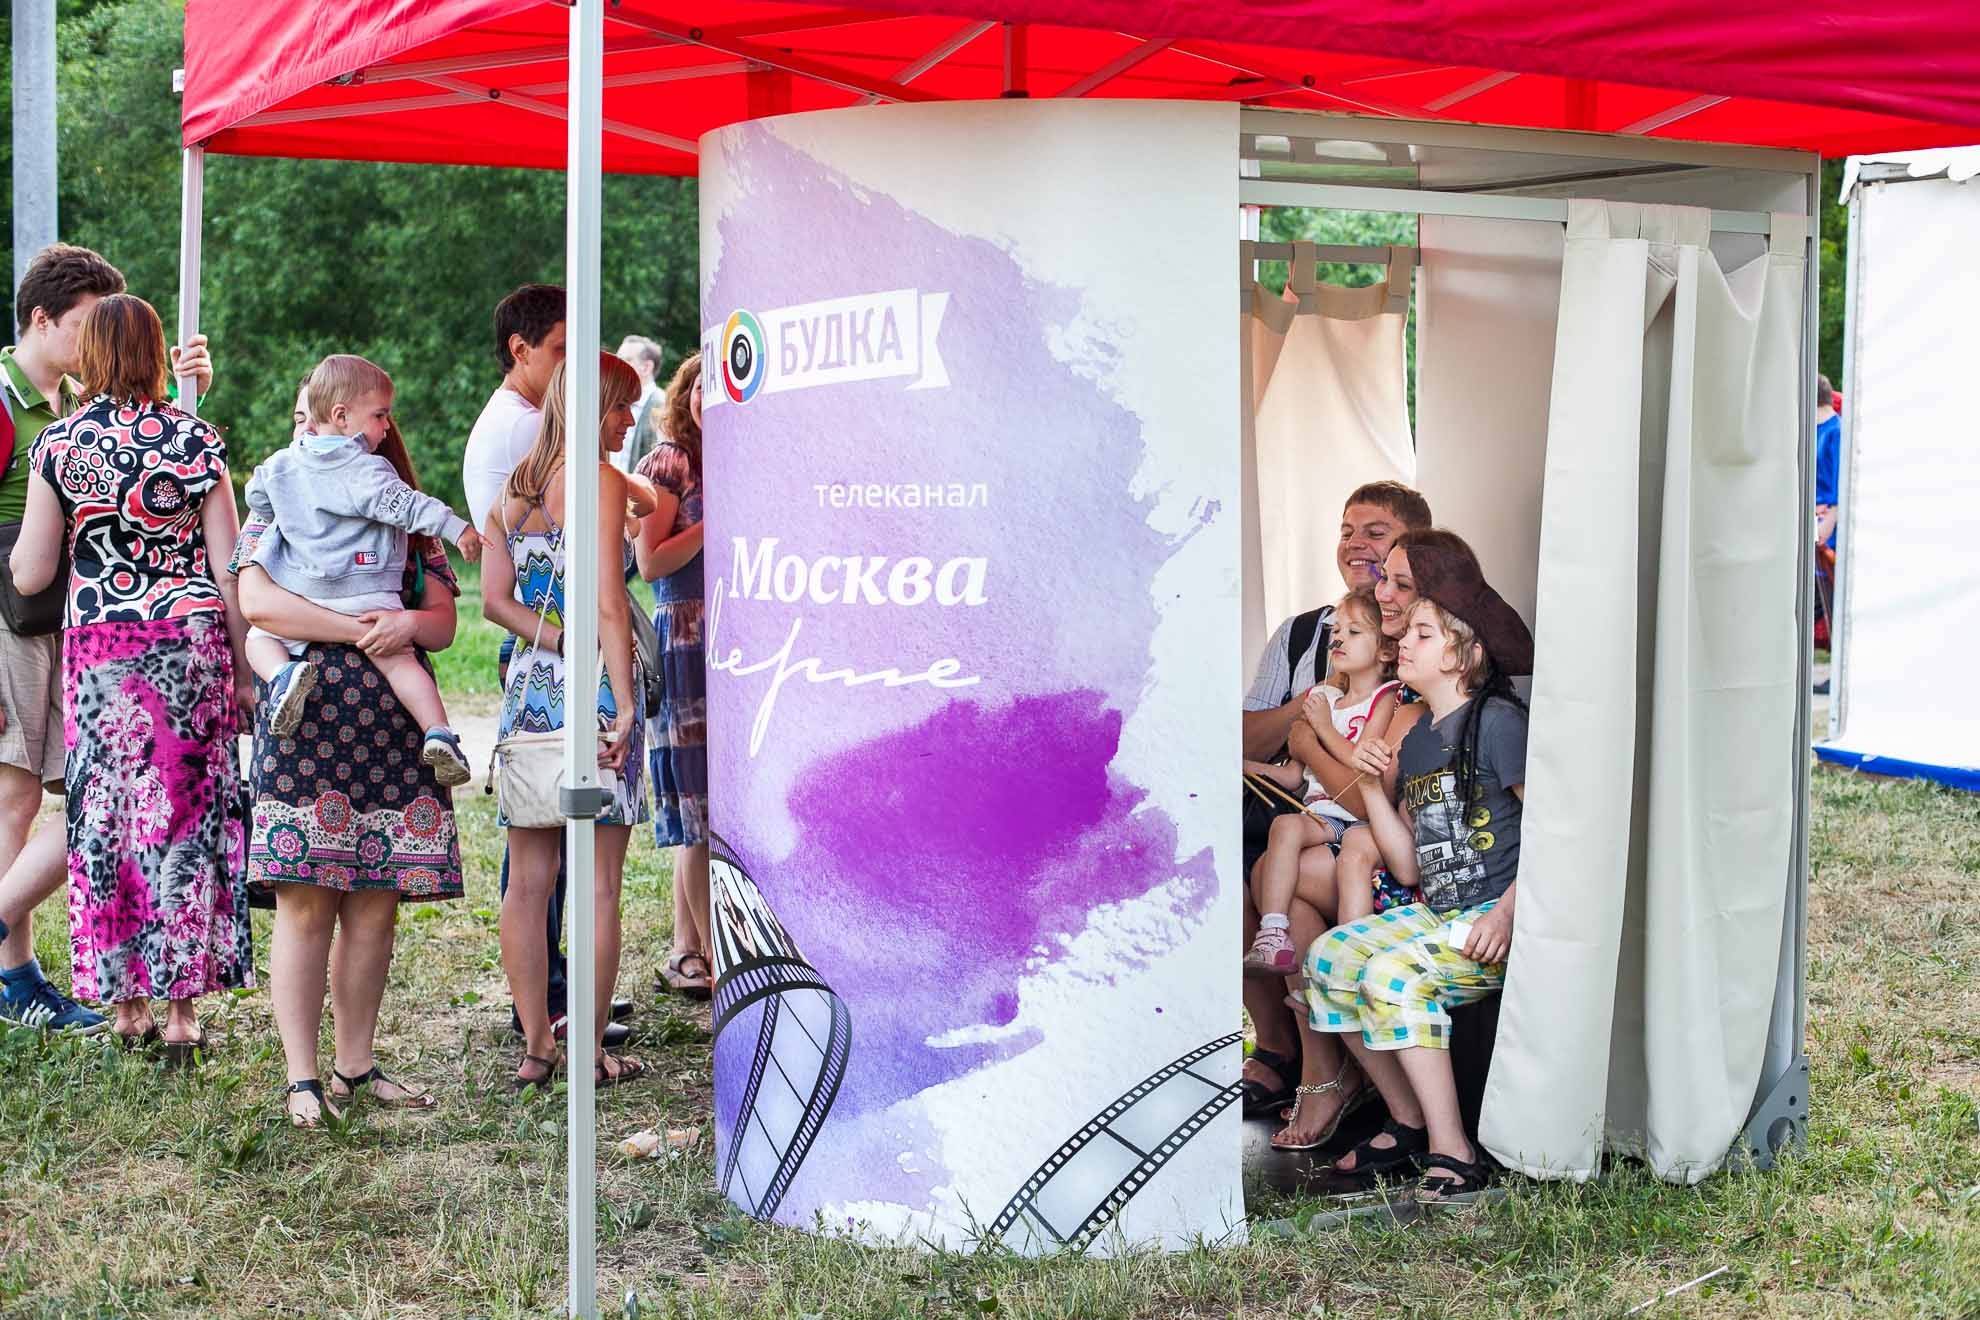 ДЛЯ ТЕЛЕКАНАЛА МОСКВА24 на фестивале Времена и Эпохи в Коломенском